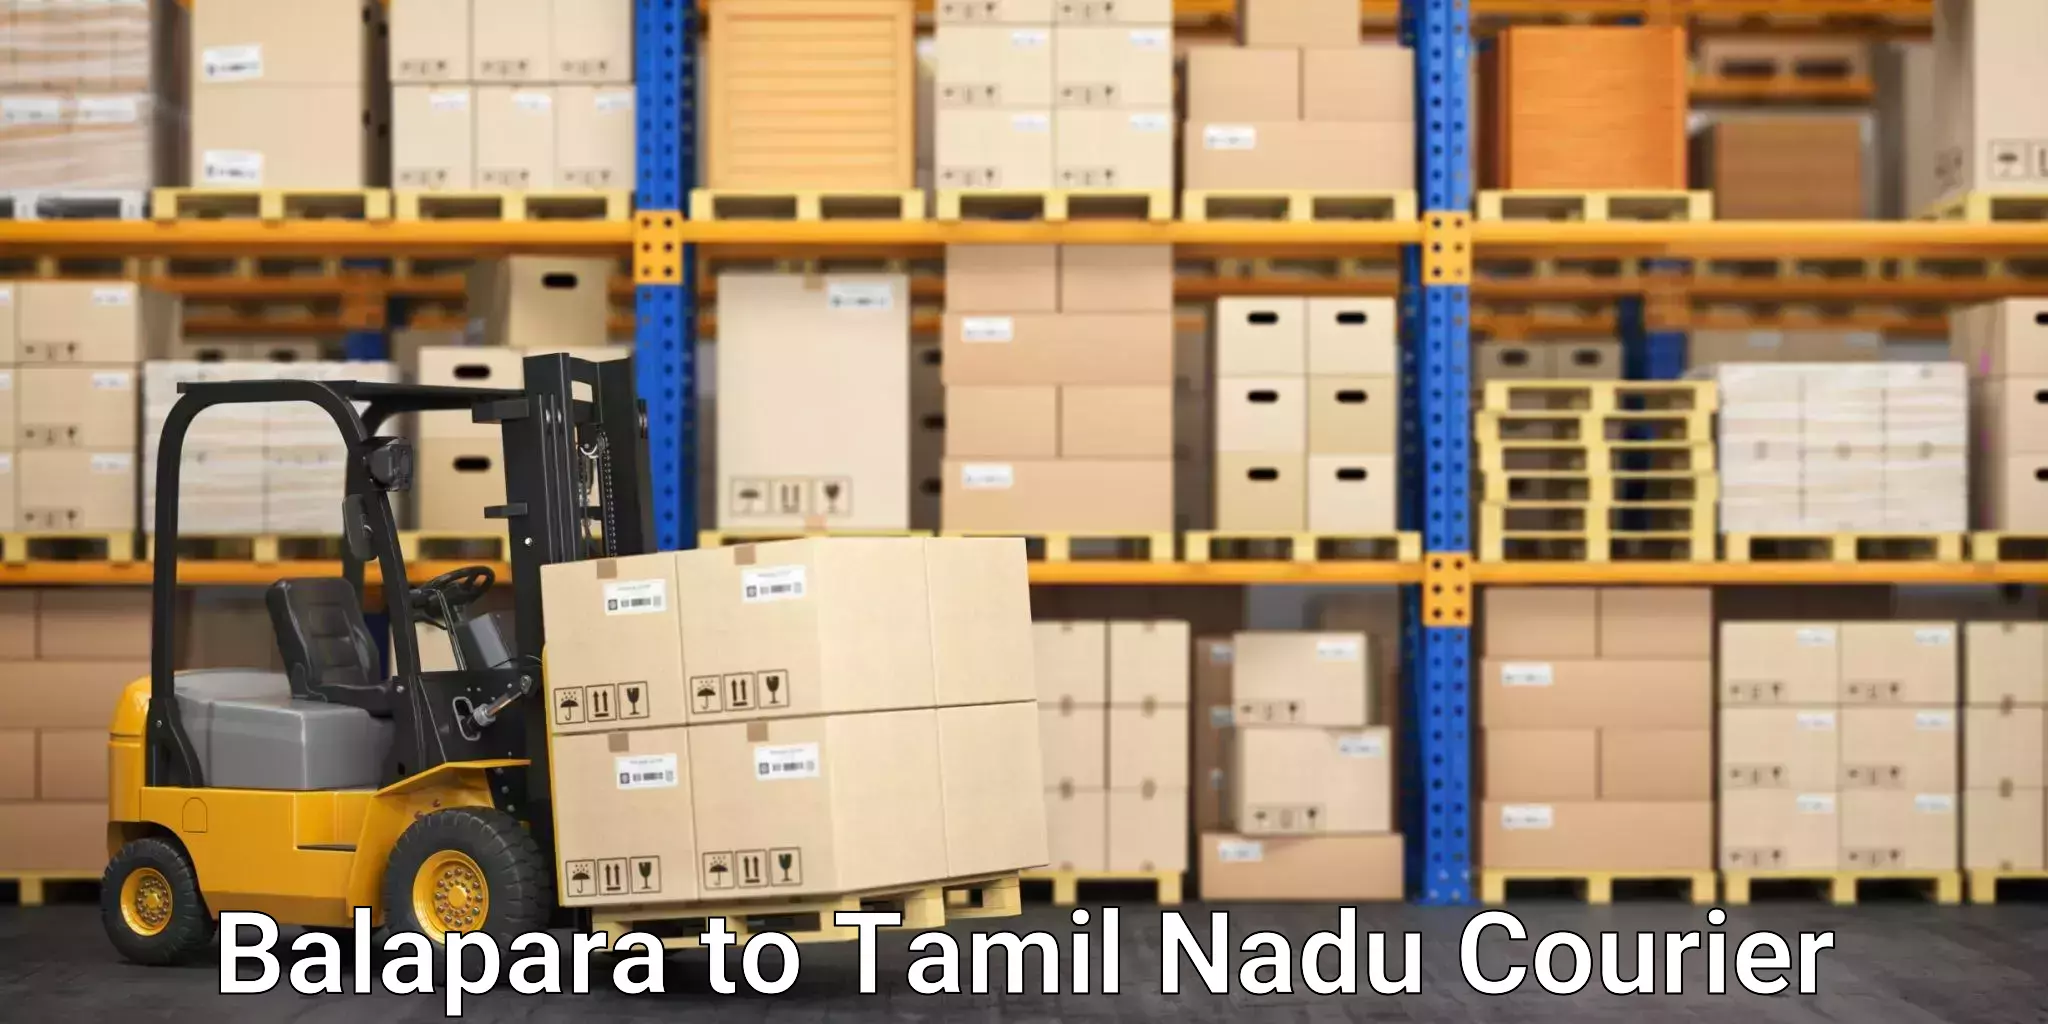 Express logistics service Balapara to IIT Madras